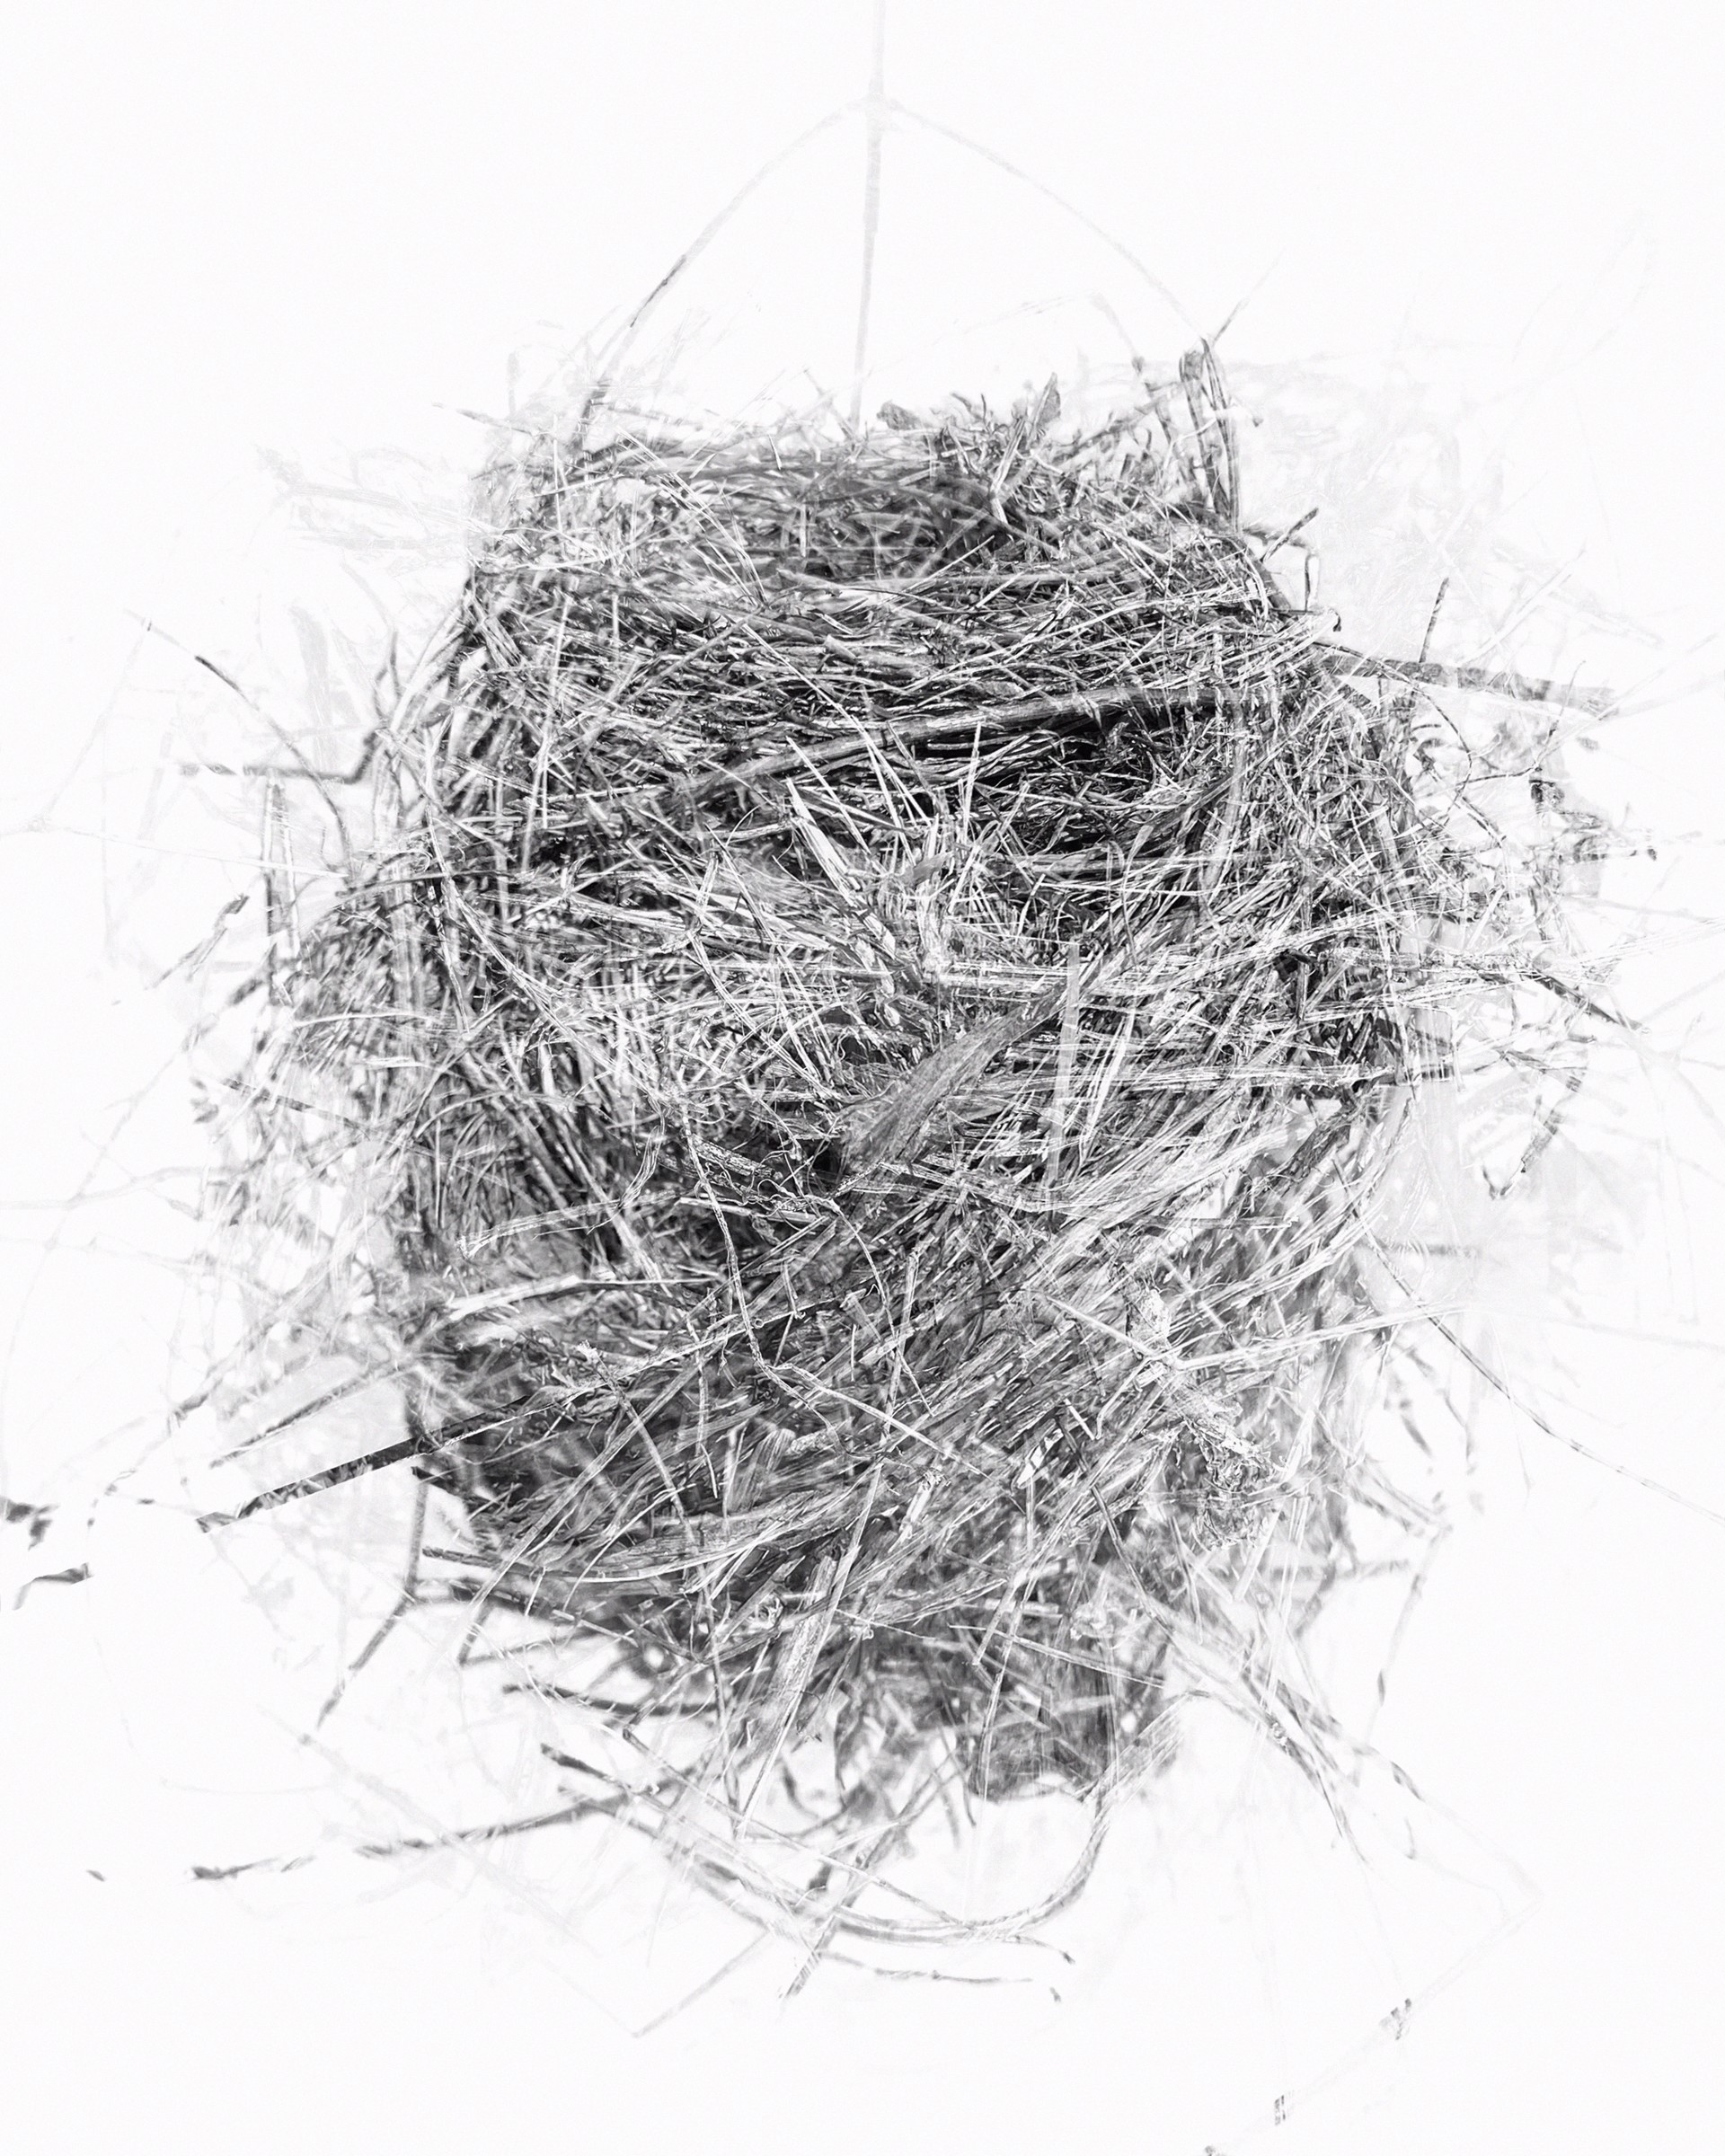 Holding: nest found north of Dyersville, IA by Rachel Deutmeyer